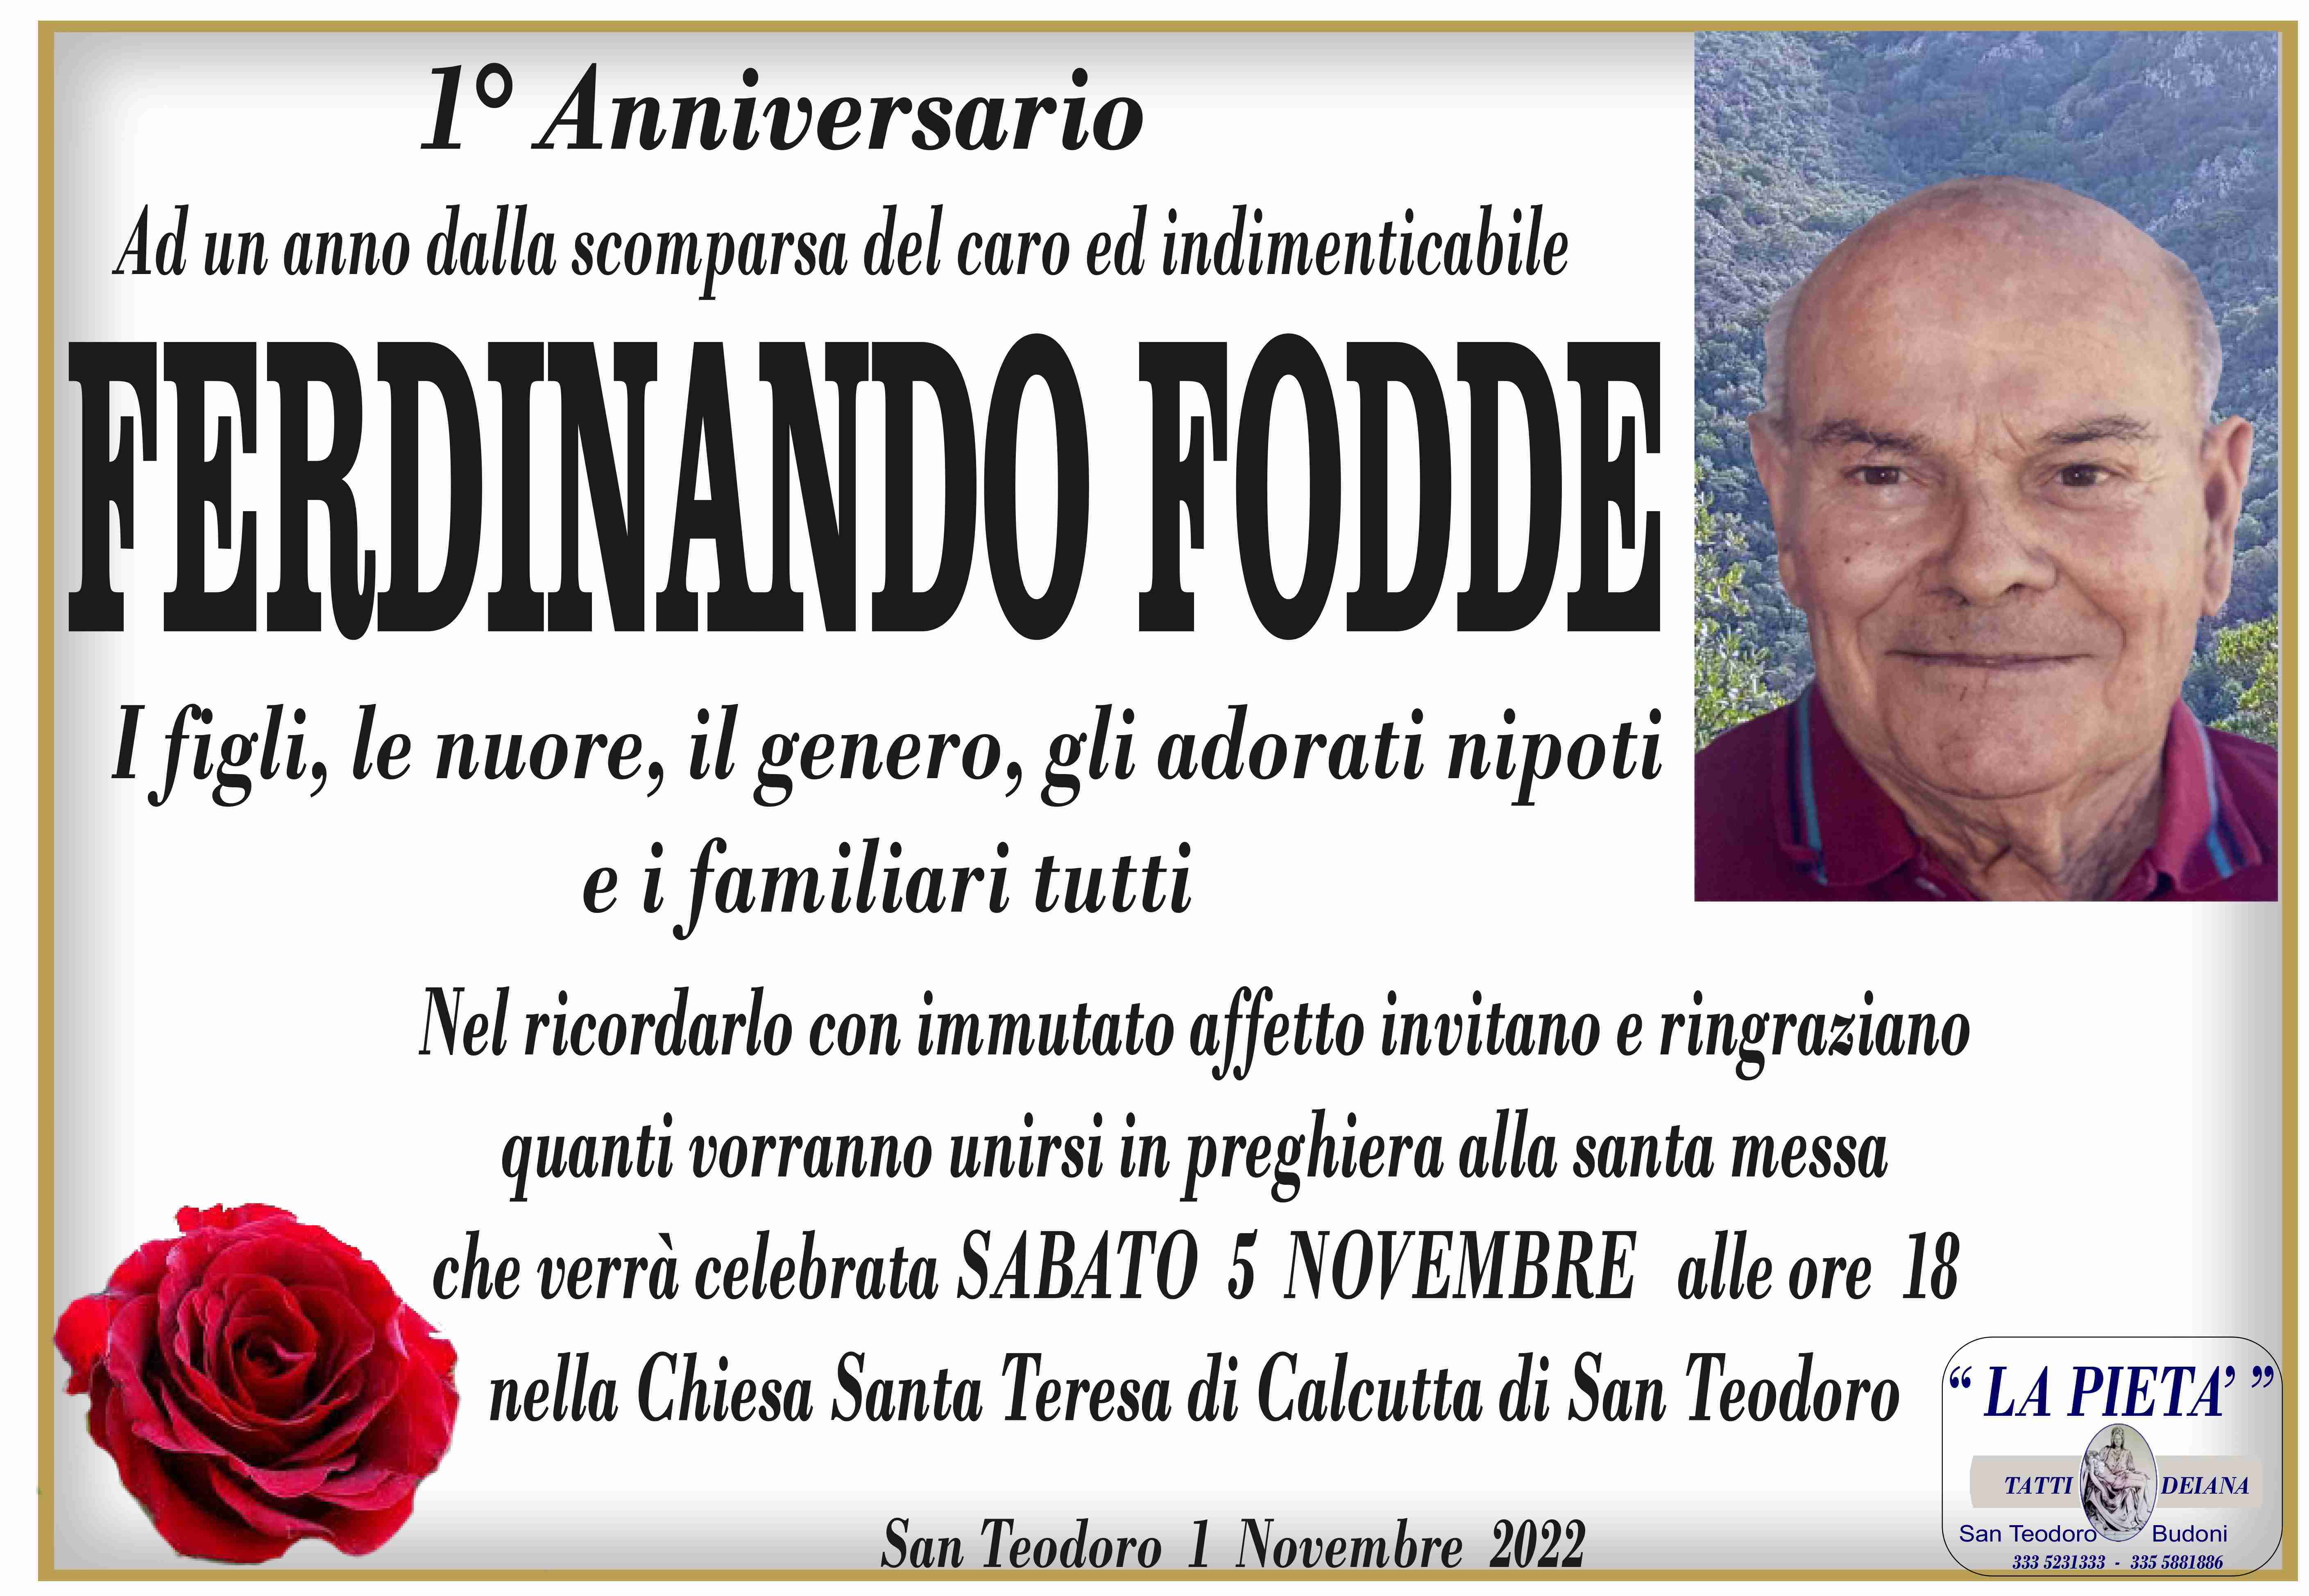 Ferdinando Fodde